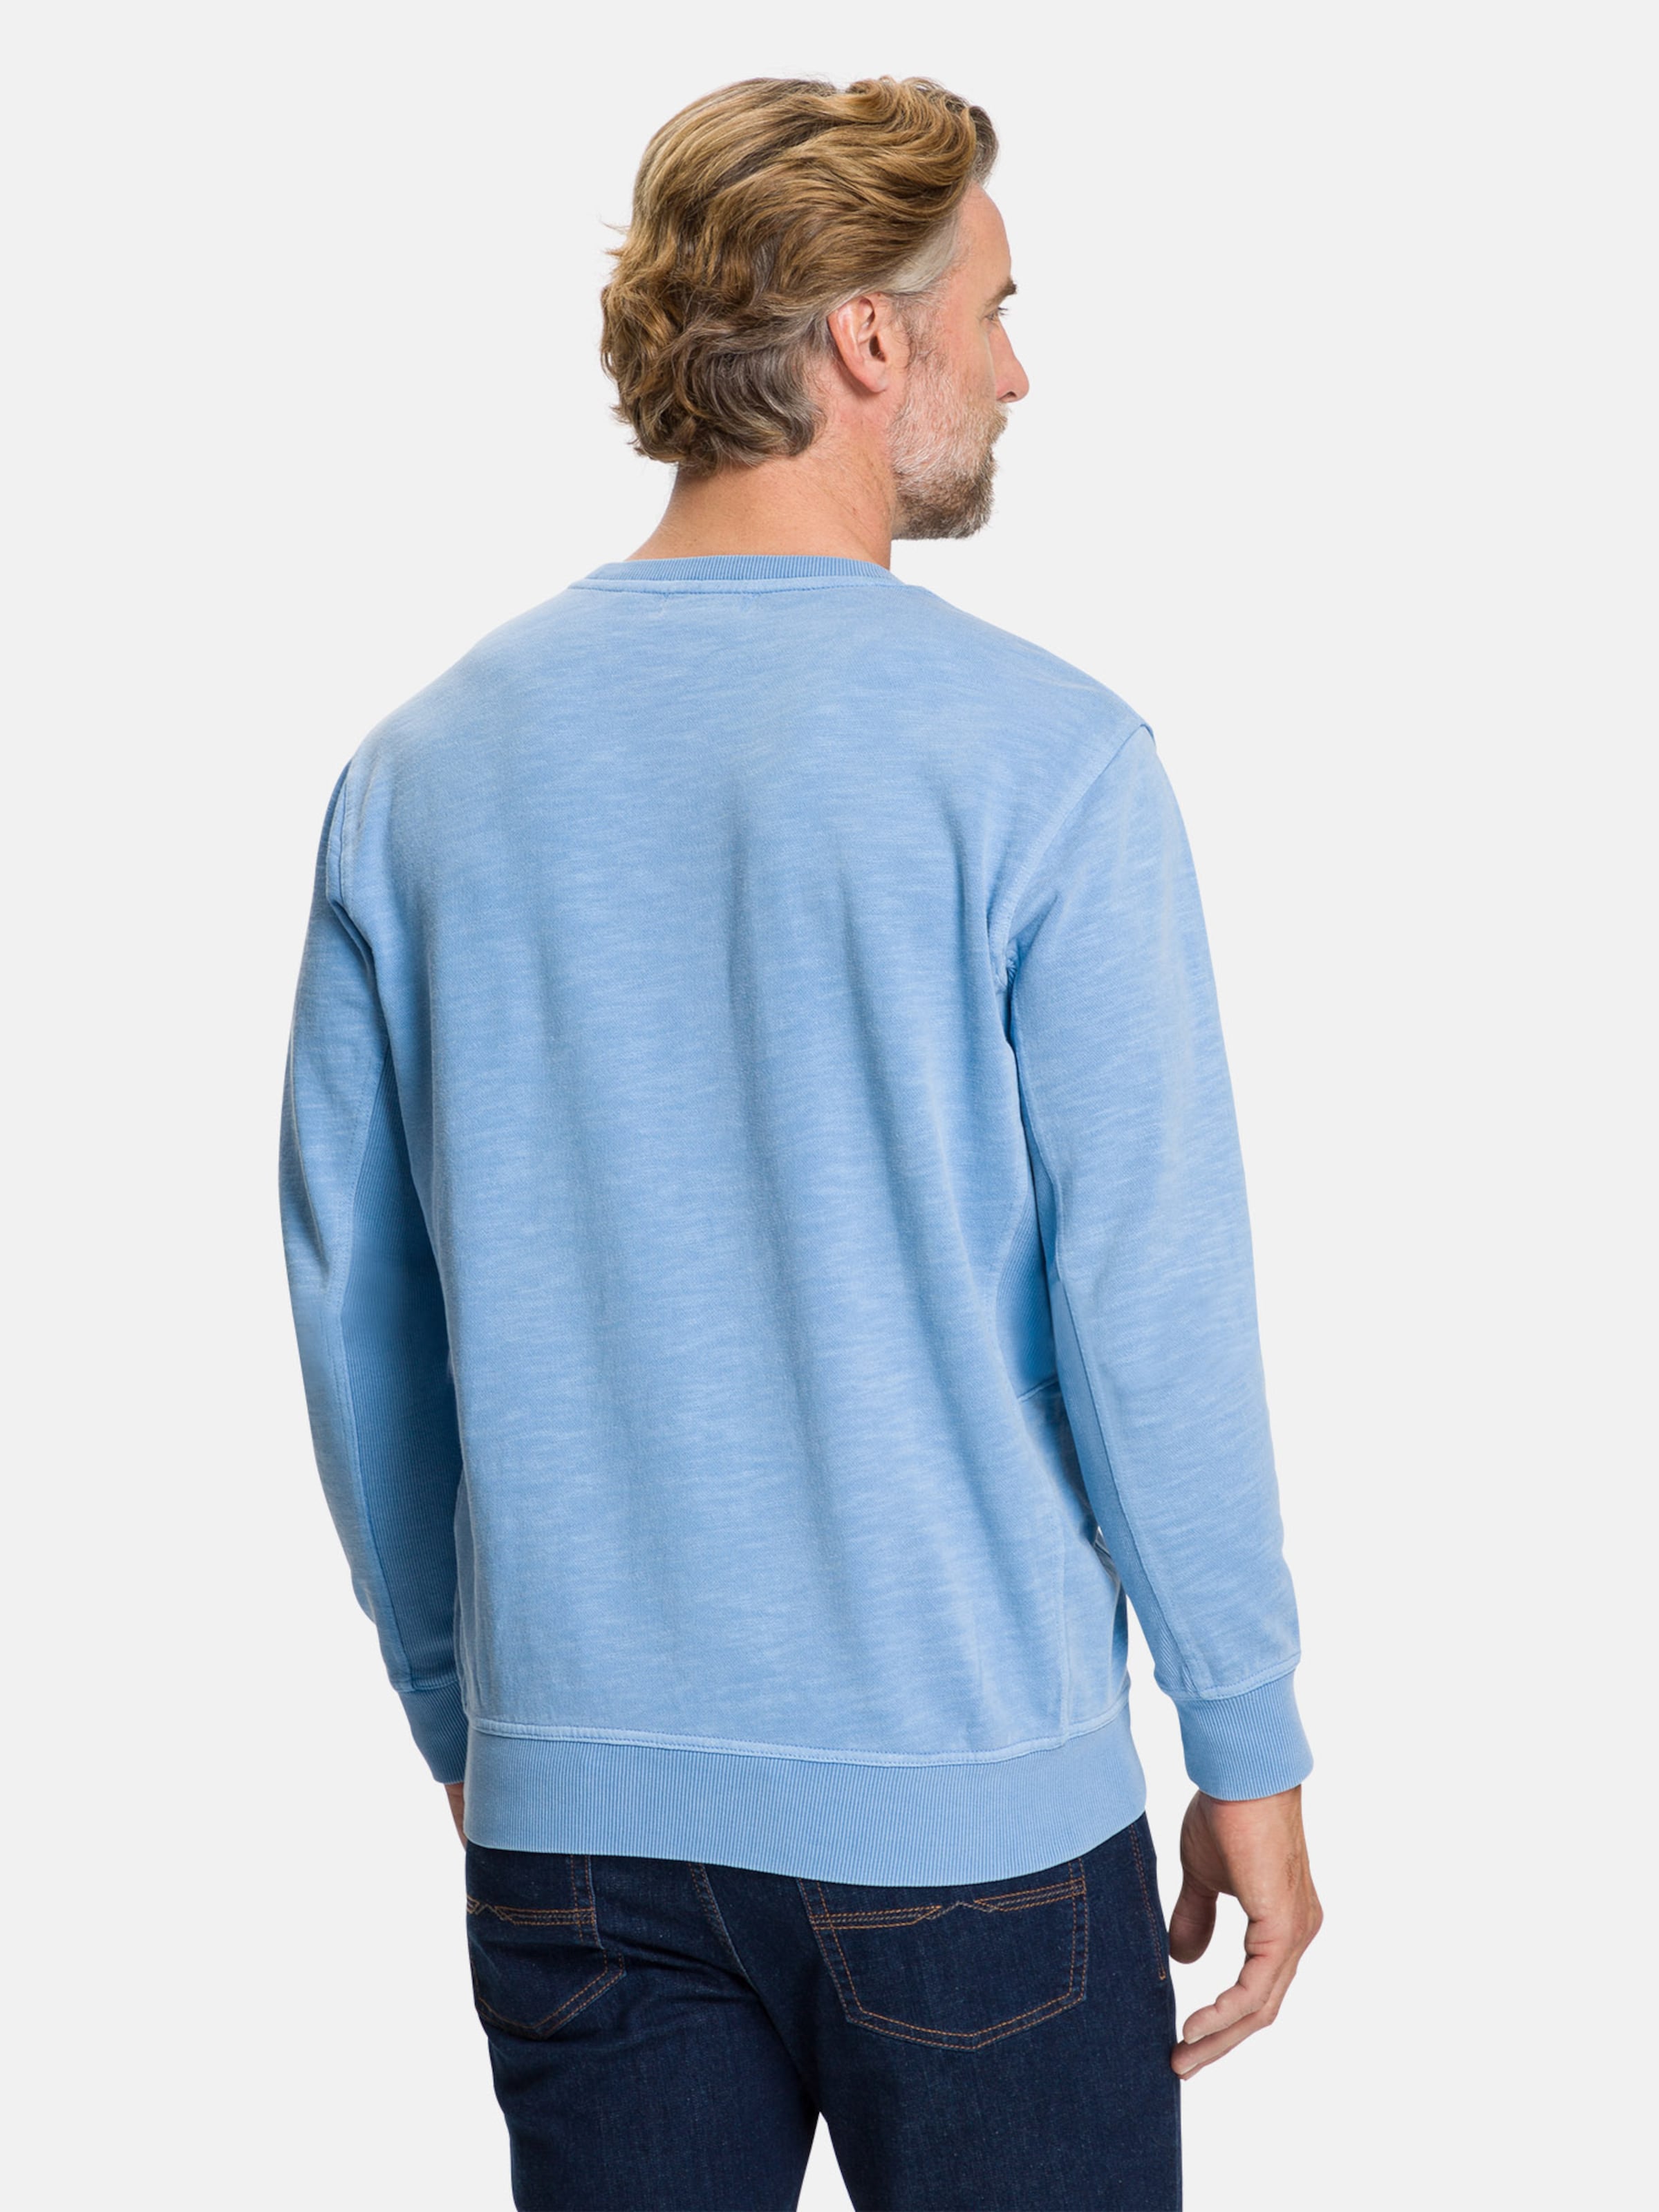 Männer Große Größen PIONEER Sweatshirt in Blaumeliert - BR24659